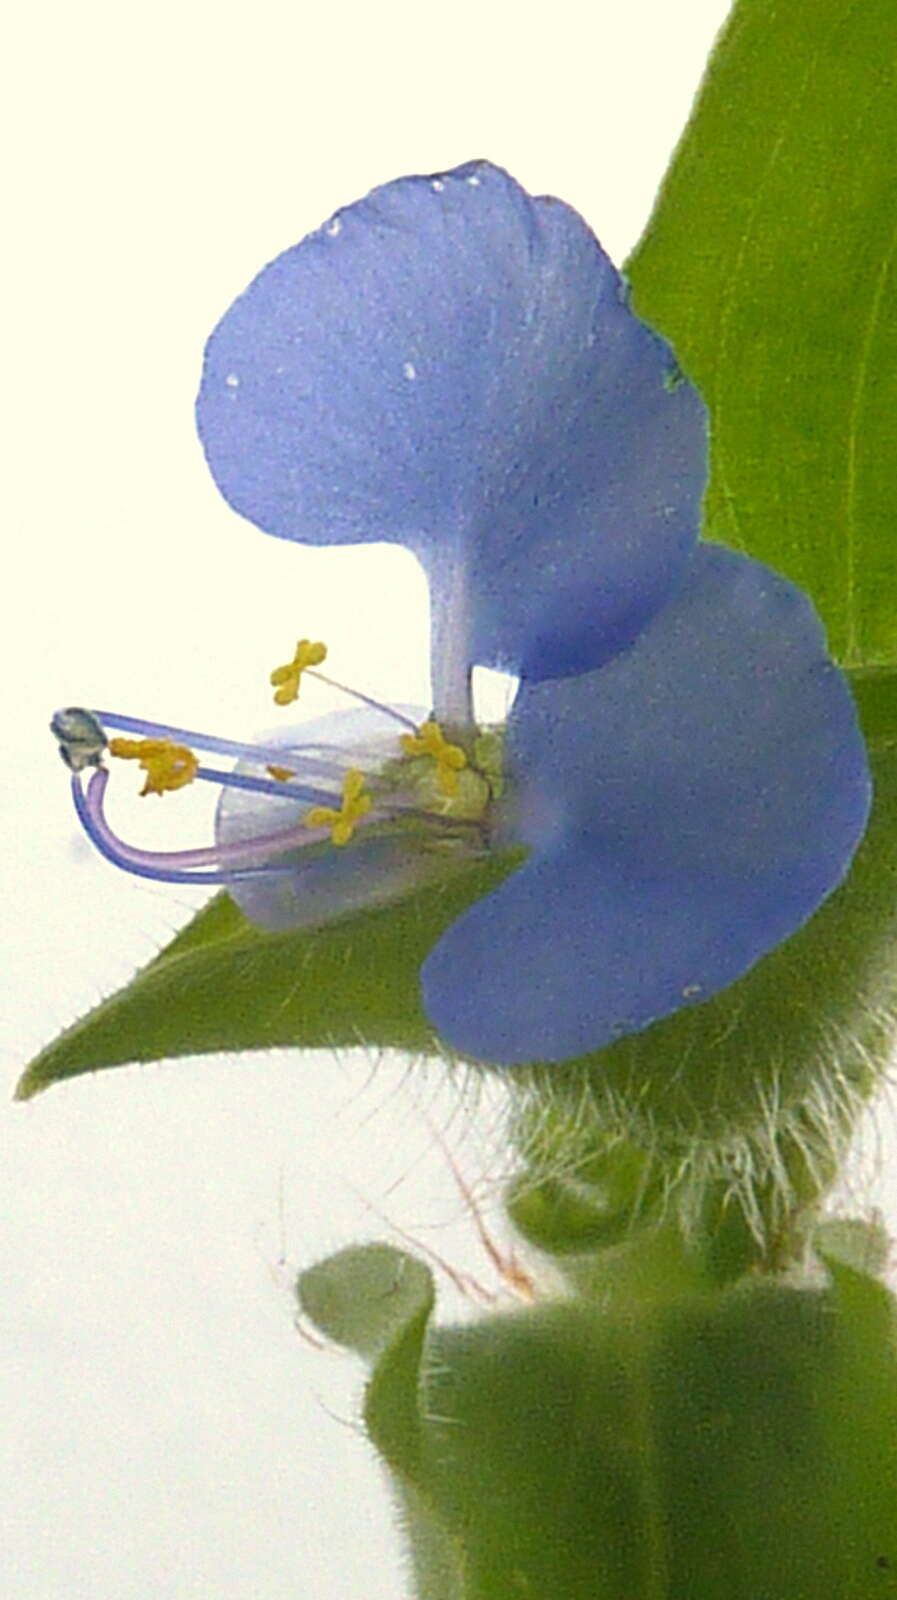 Image of dayflower